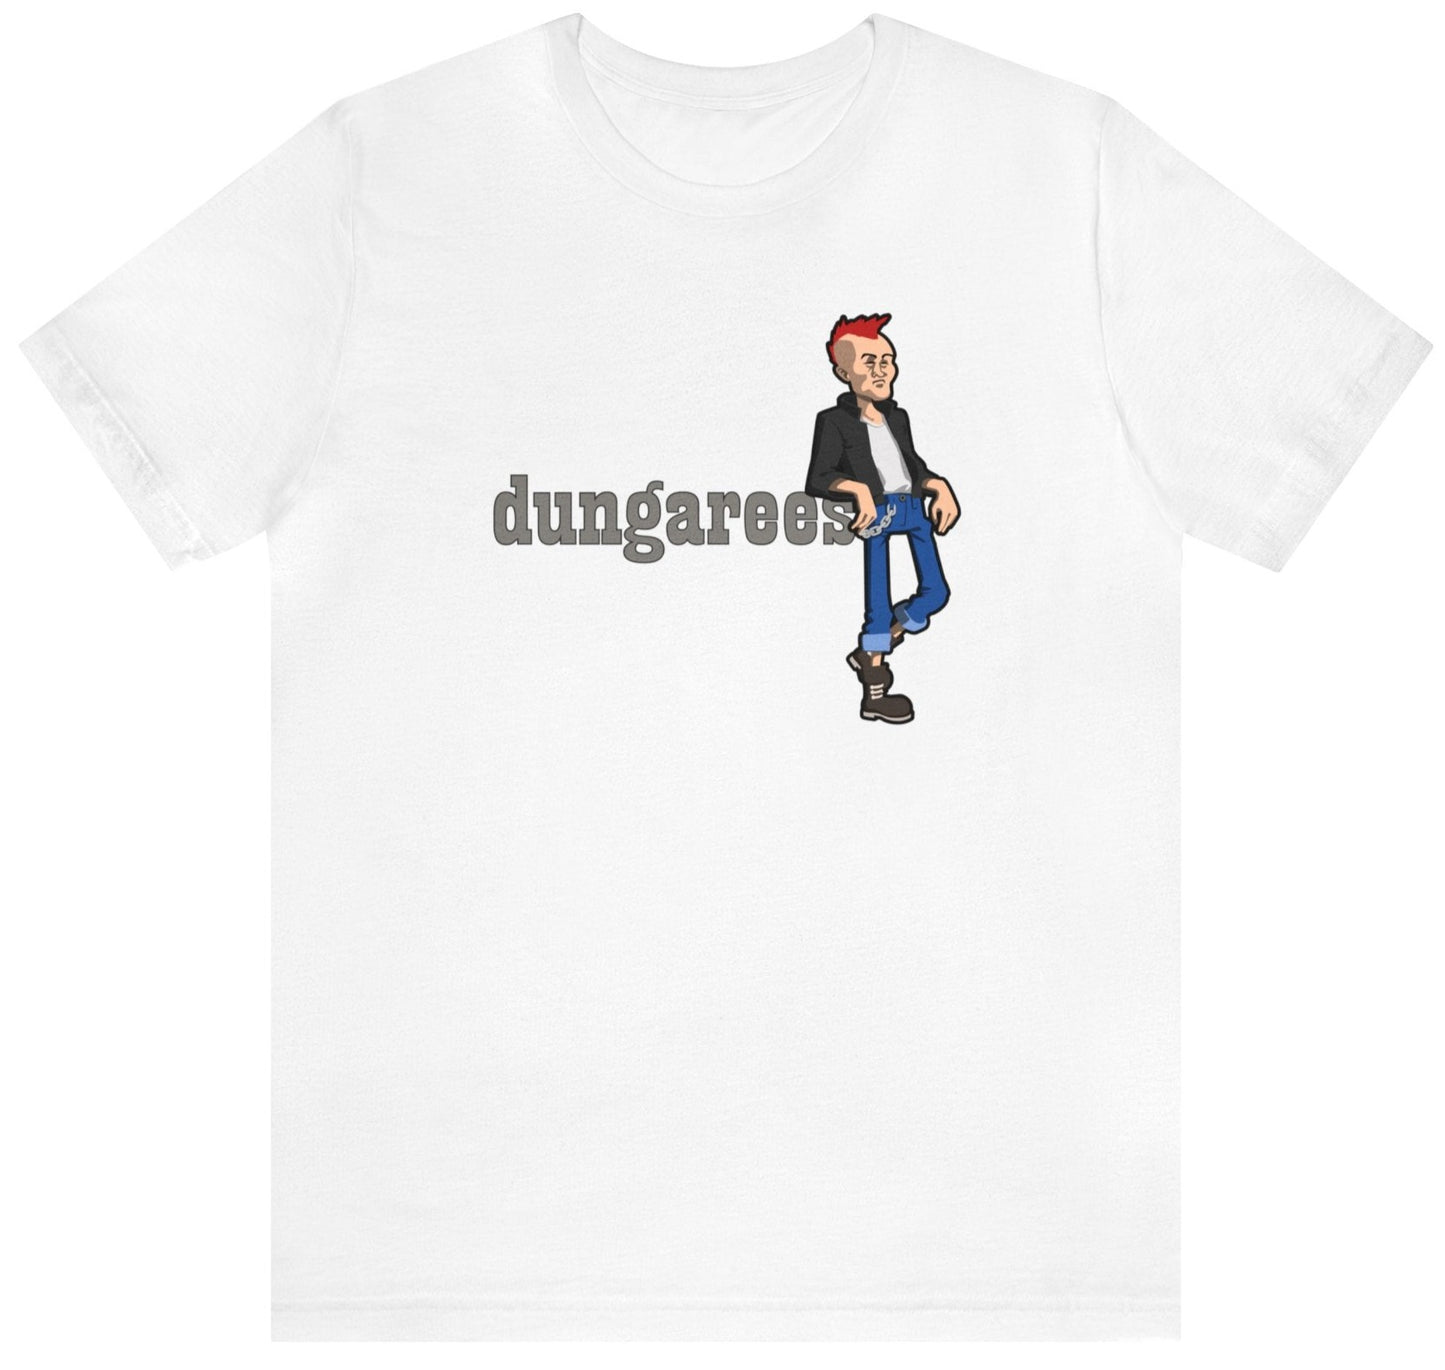 dungarees t shirt